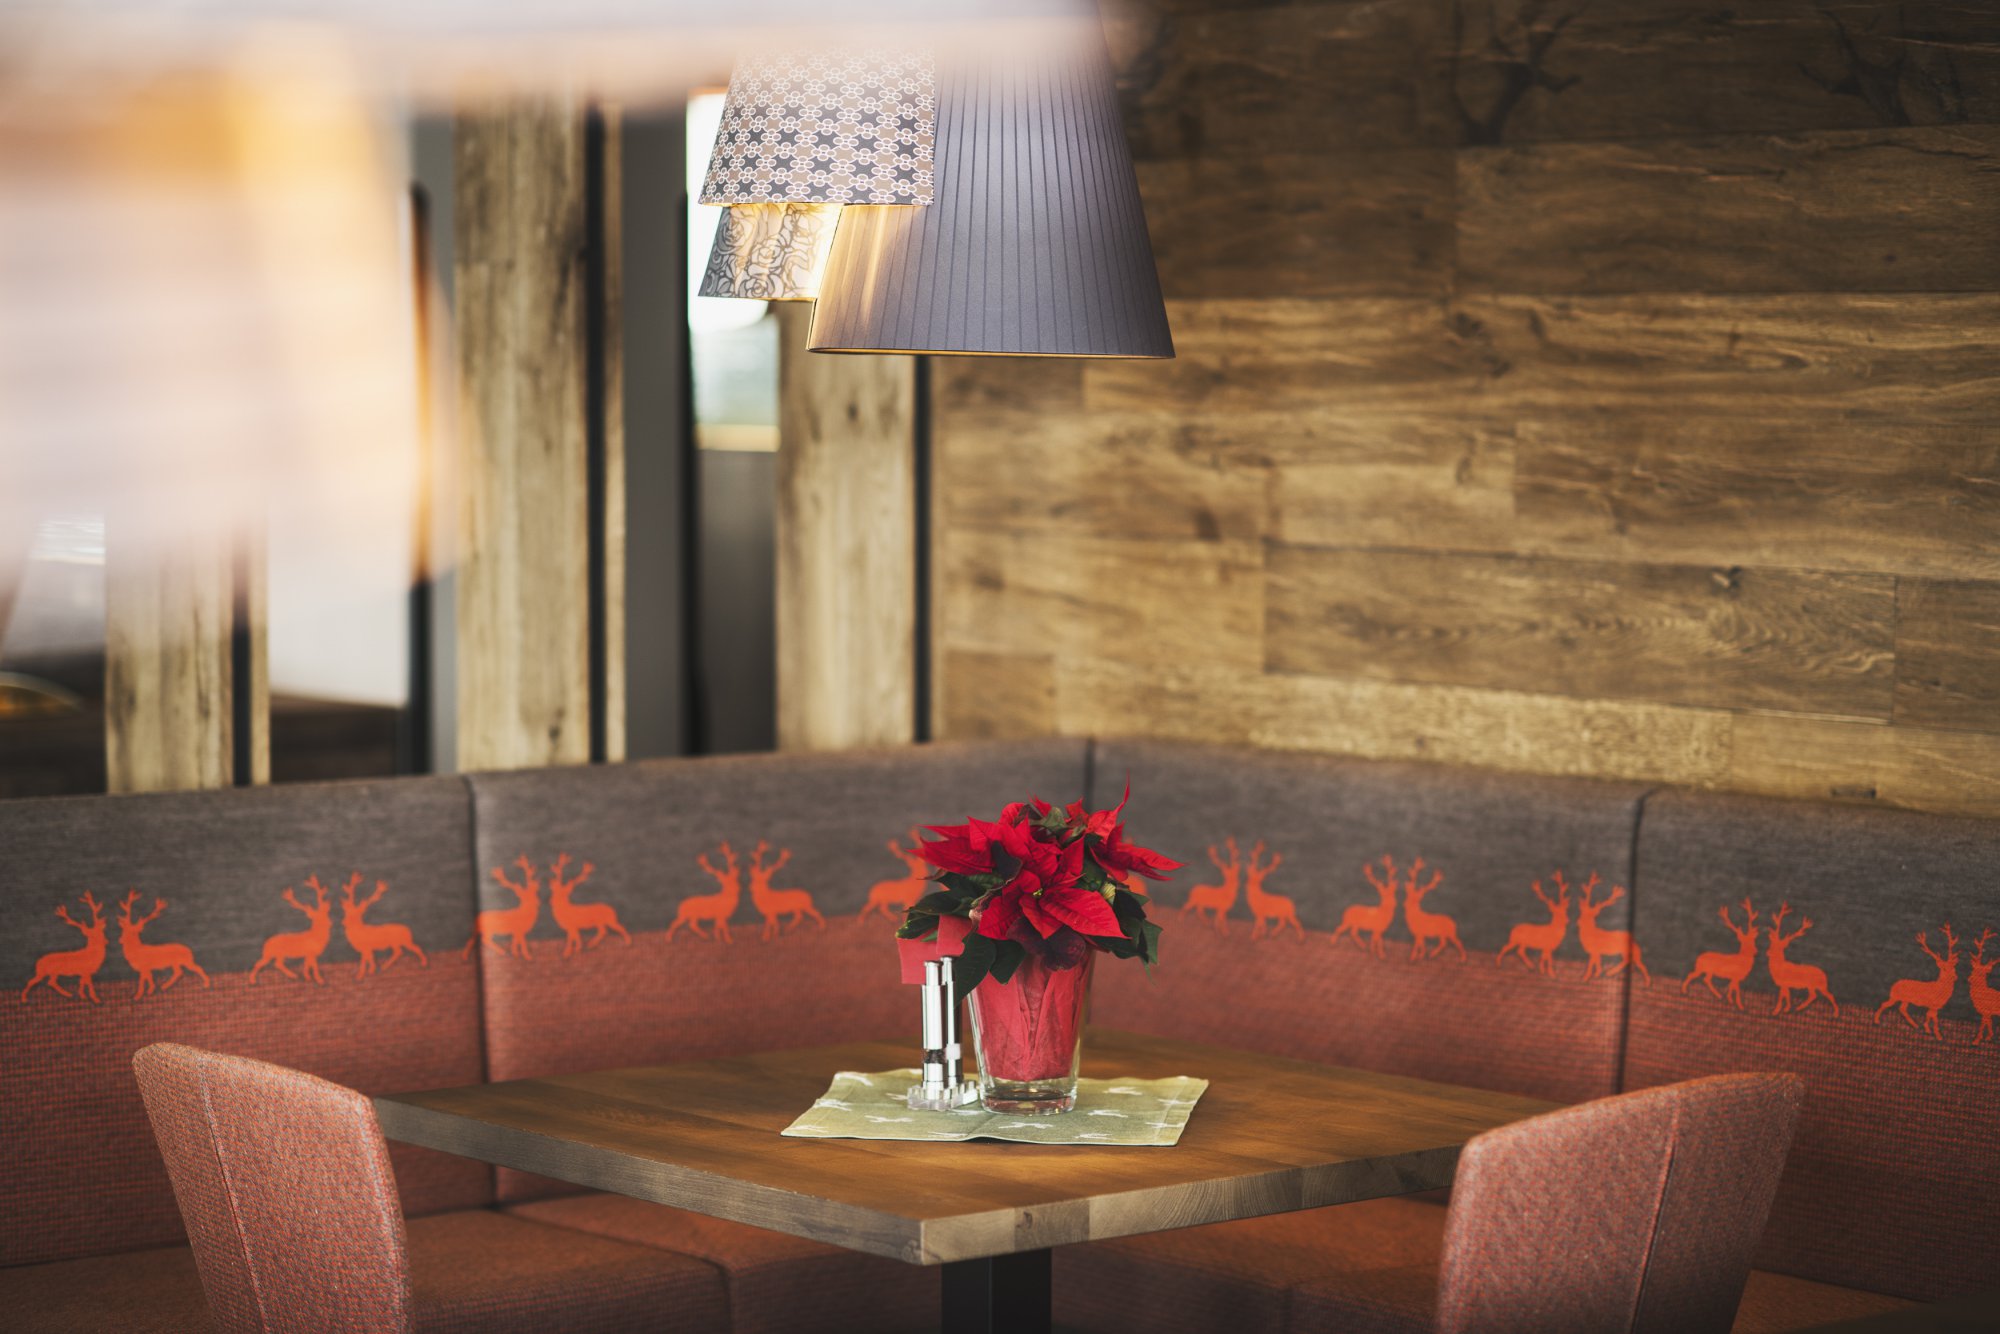 Das Mooshaus-Restaurant bietet eine gepflegte Atmosphäre mit sorgsam gewählten Farben und schönen Leuchten.